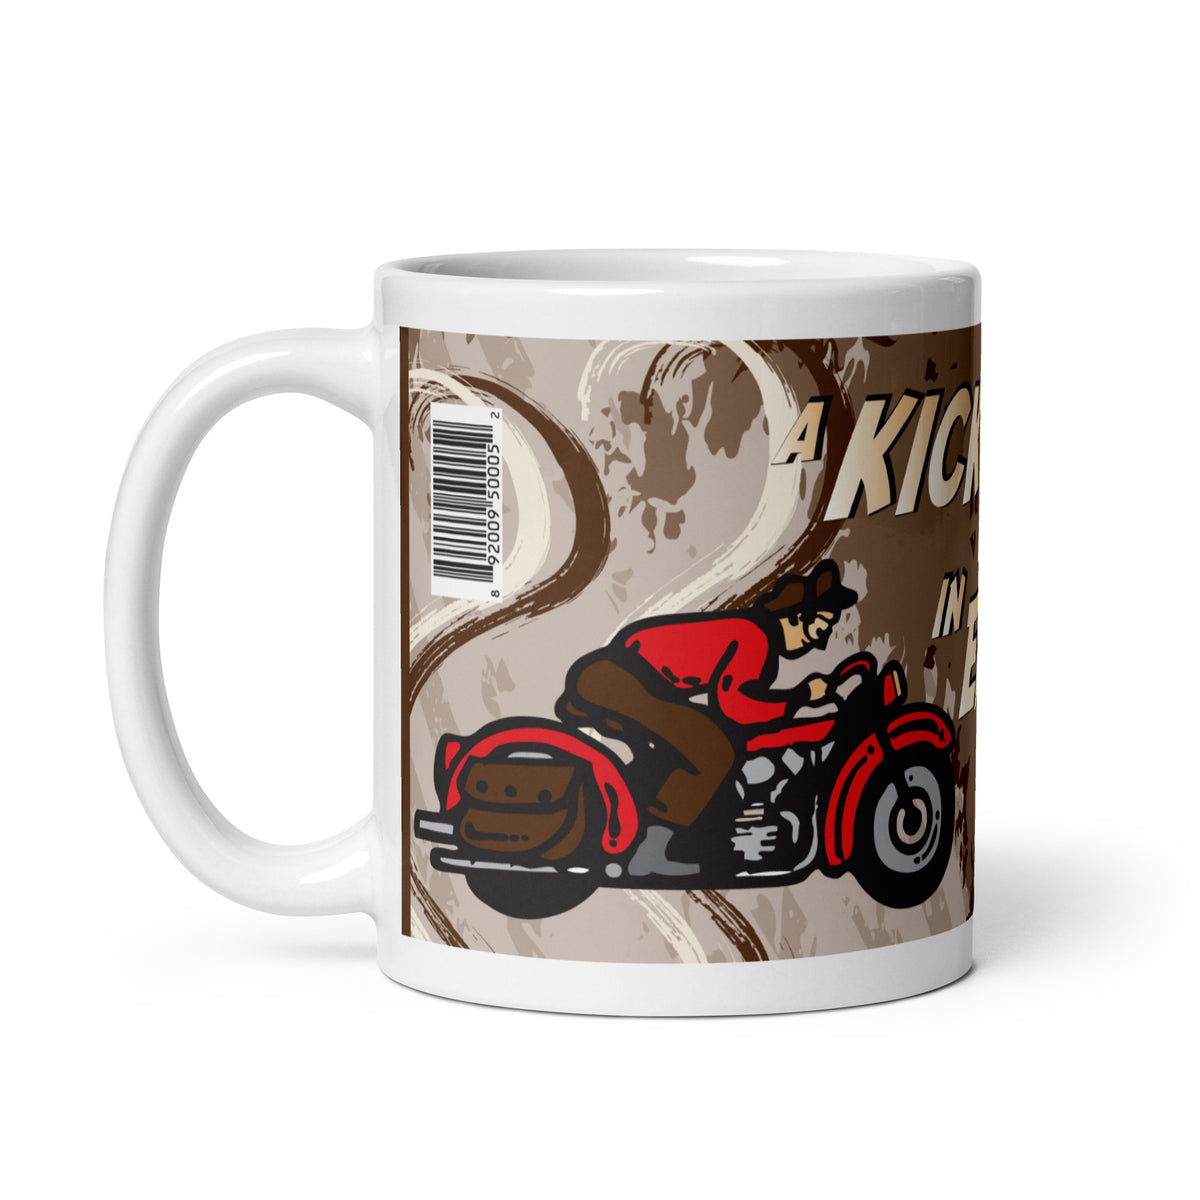 Busted Knuckle Garage Motorcycle Biker Coffee Mug